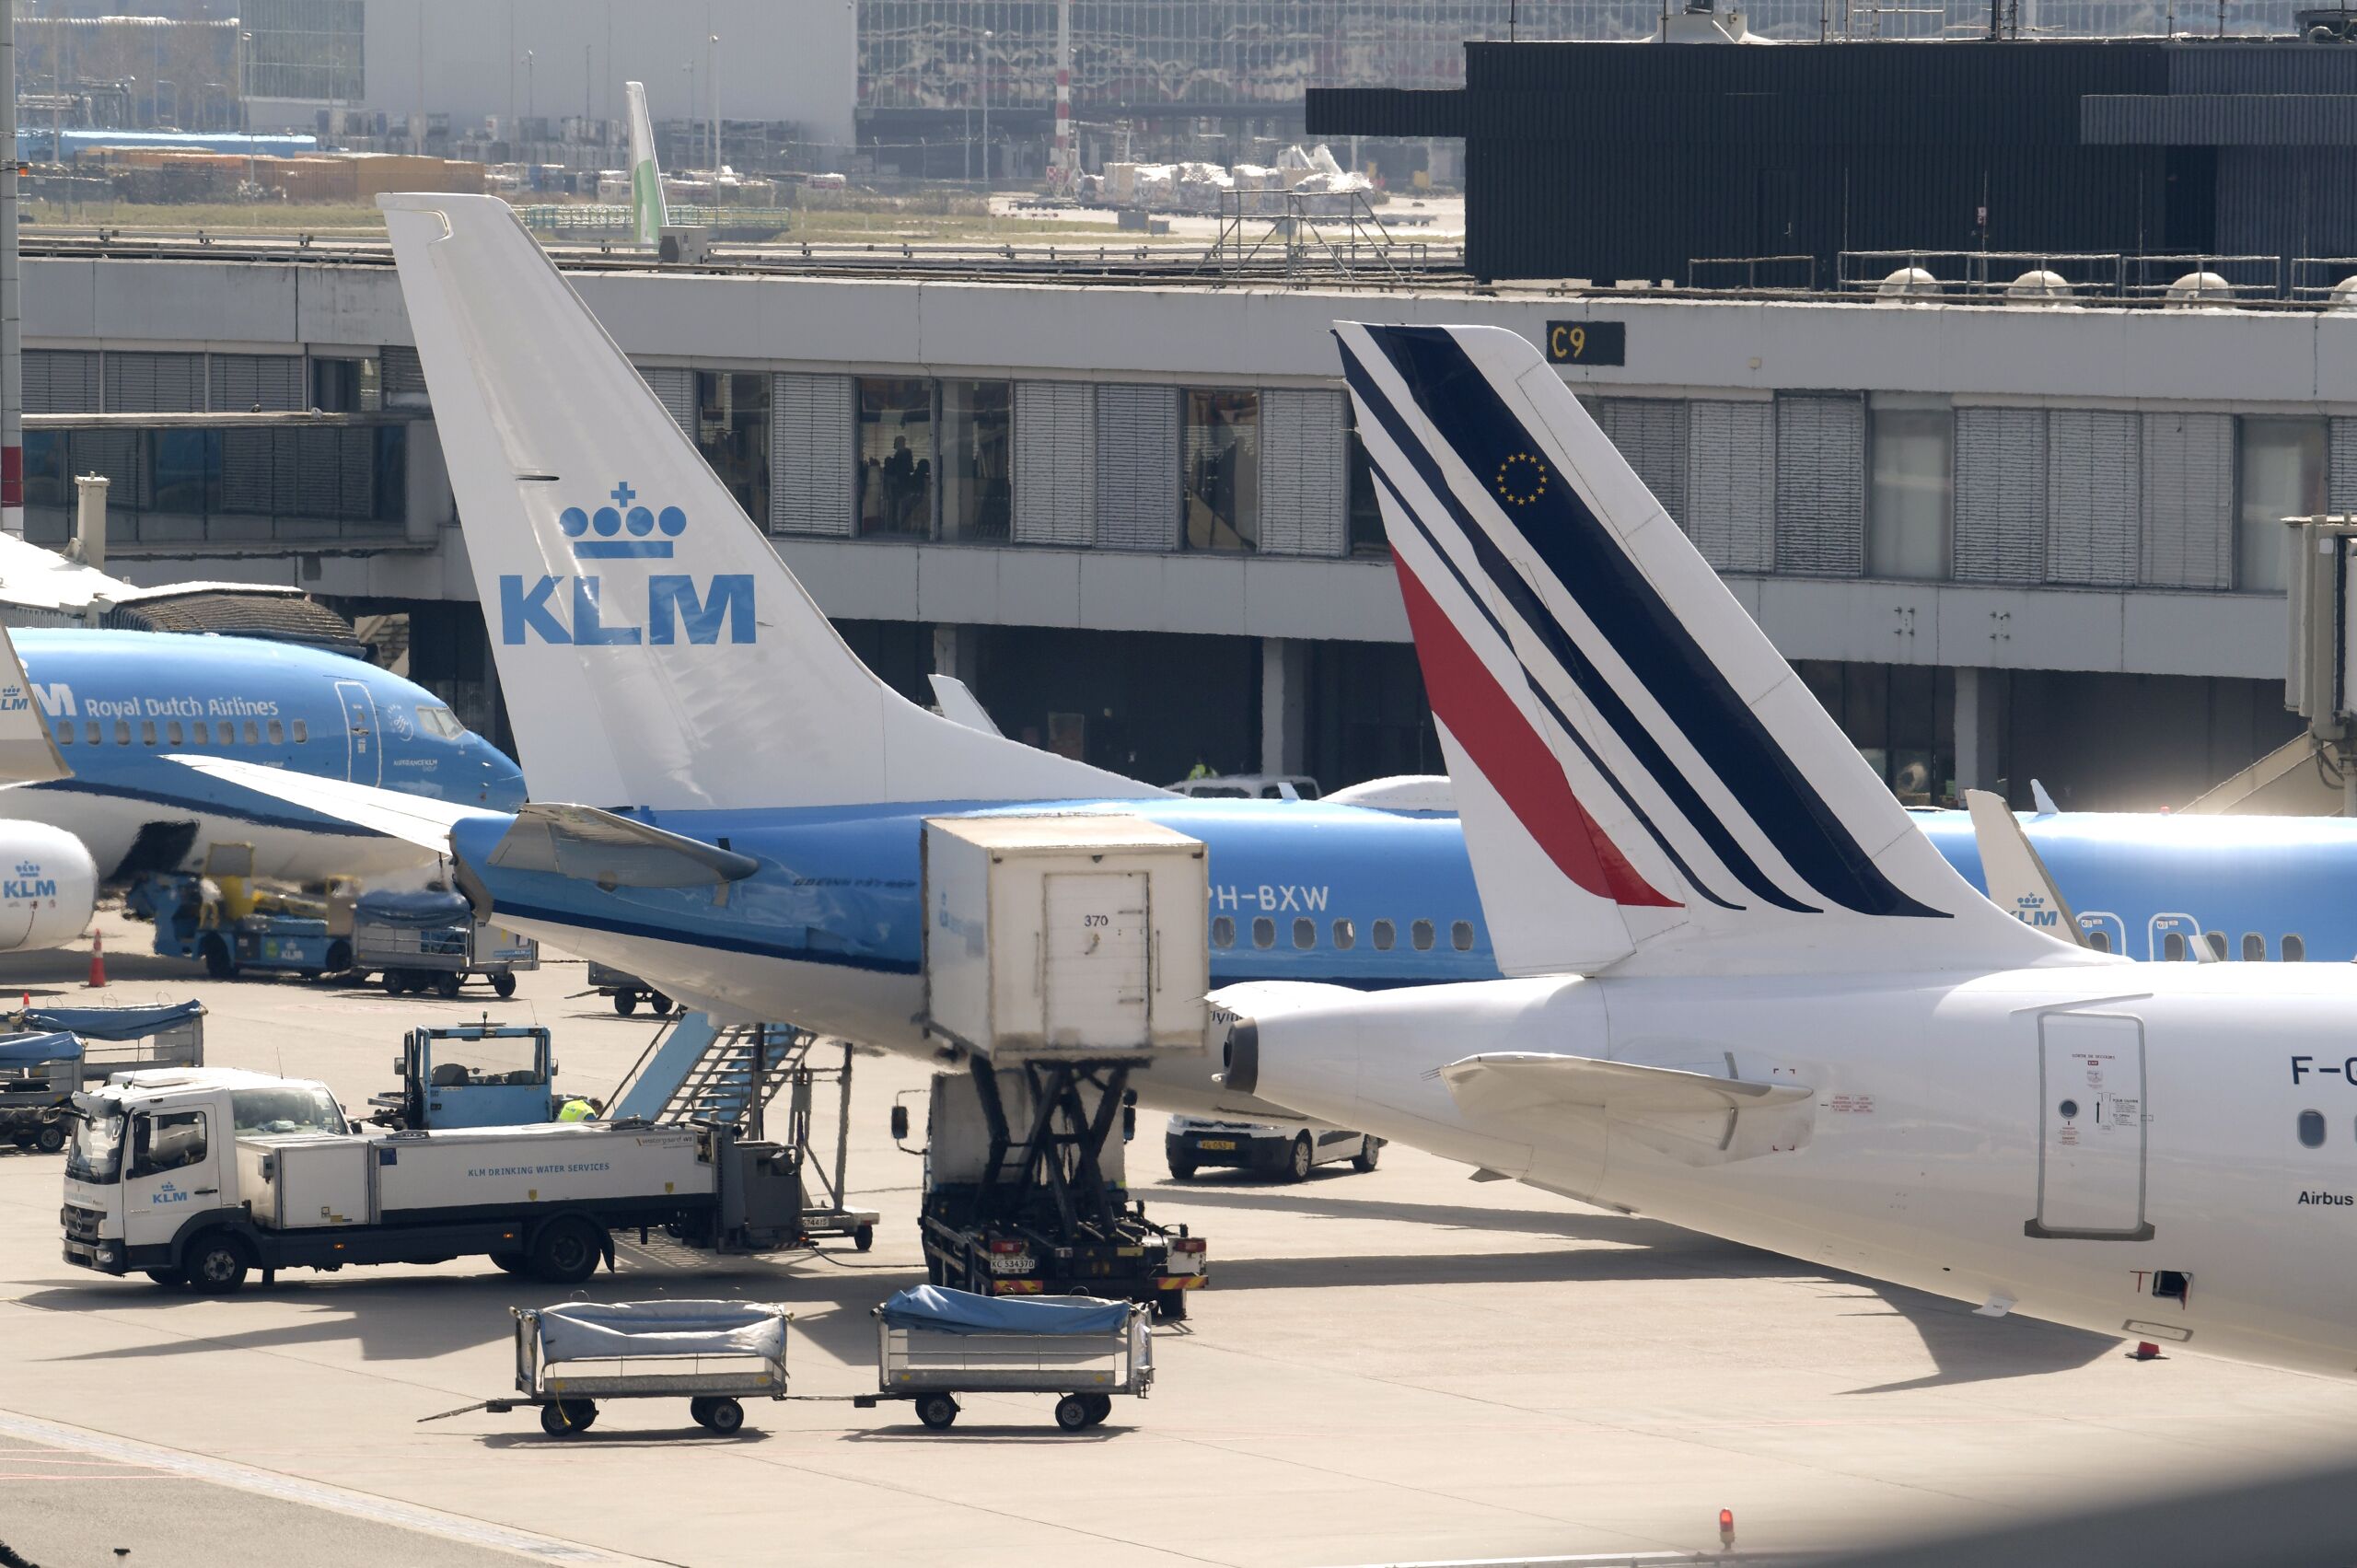 Vliegtuigen van KLM en Air France op de platformen van Schiphol.